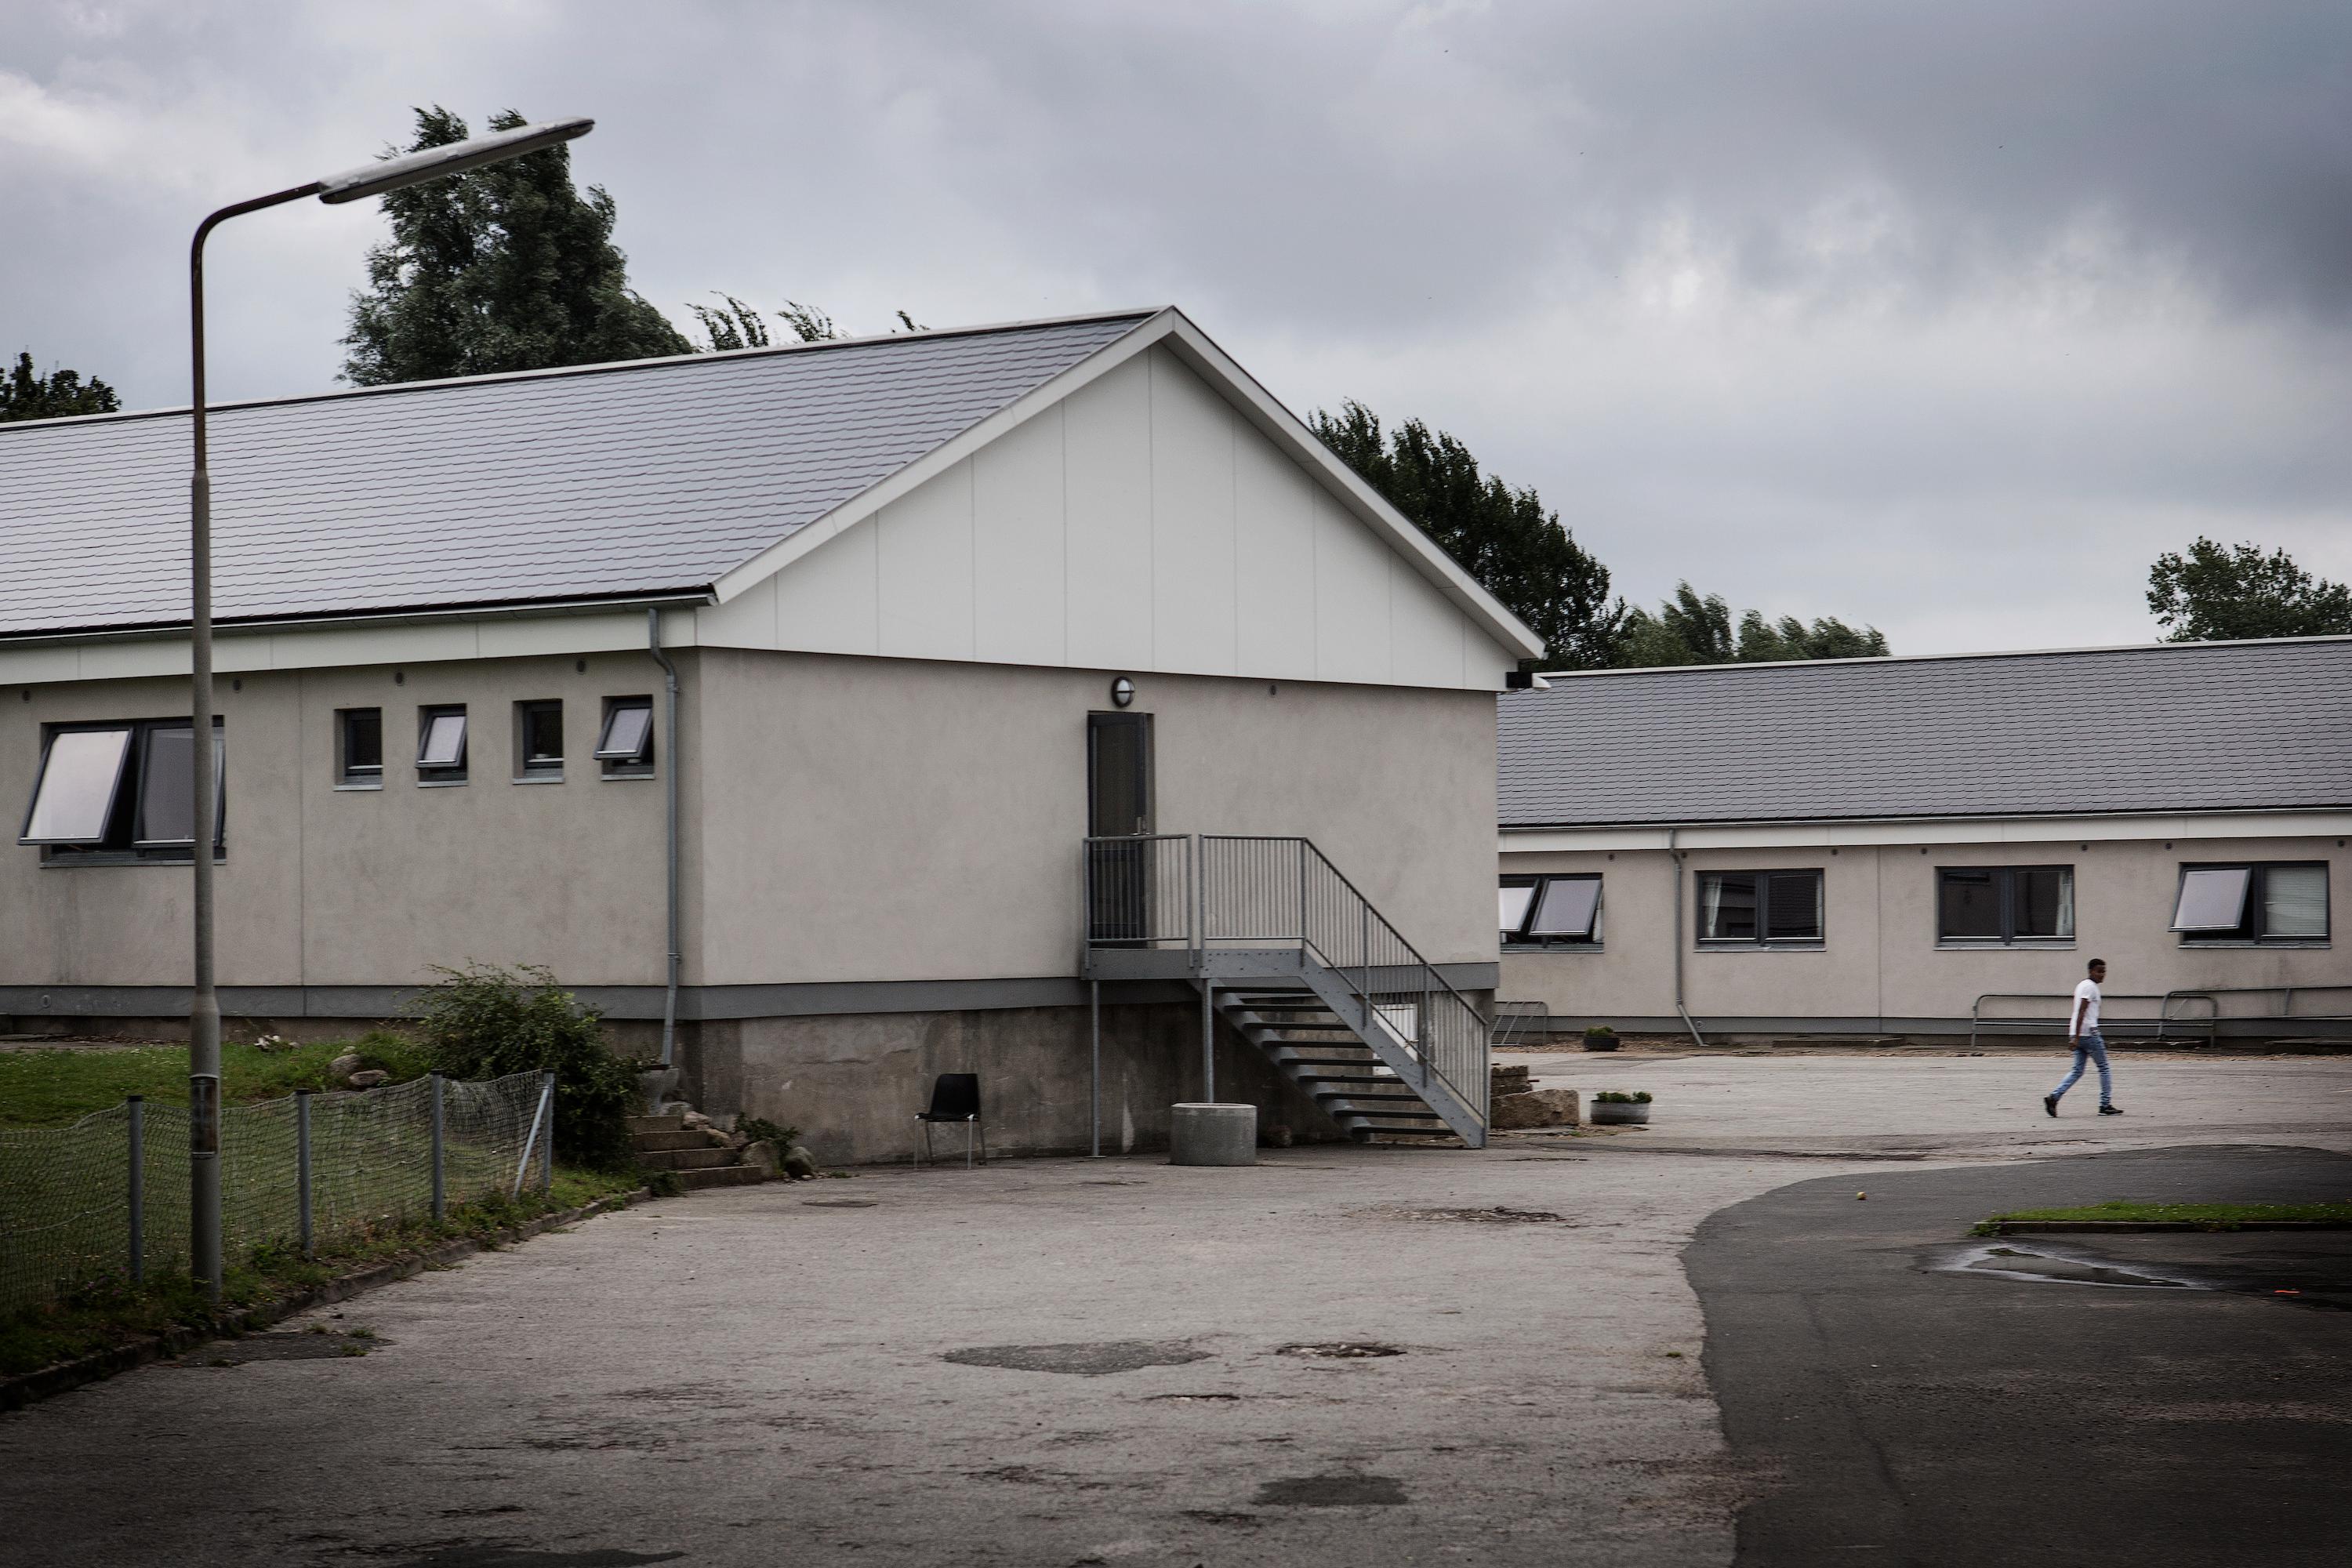 Børnecentret i Tullebølle blev lukket efter en stribe belastende sager. Foto: Rune Aarestrup Pedersen / Polfoto